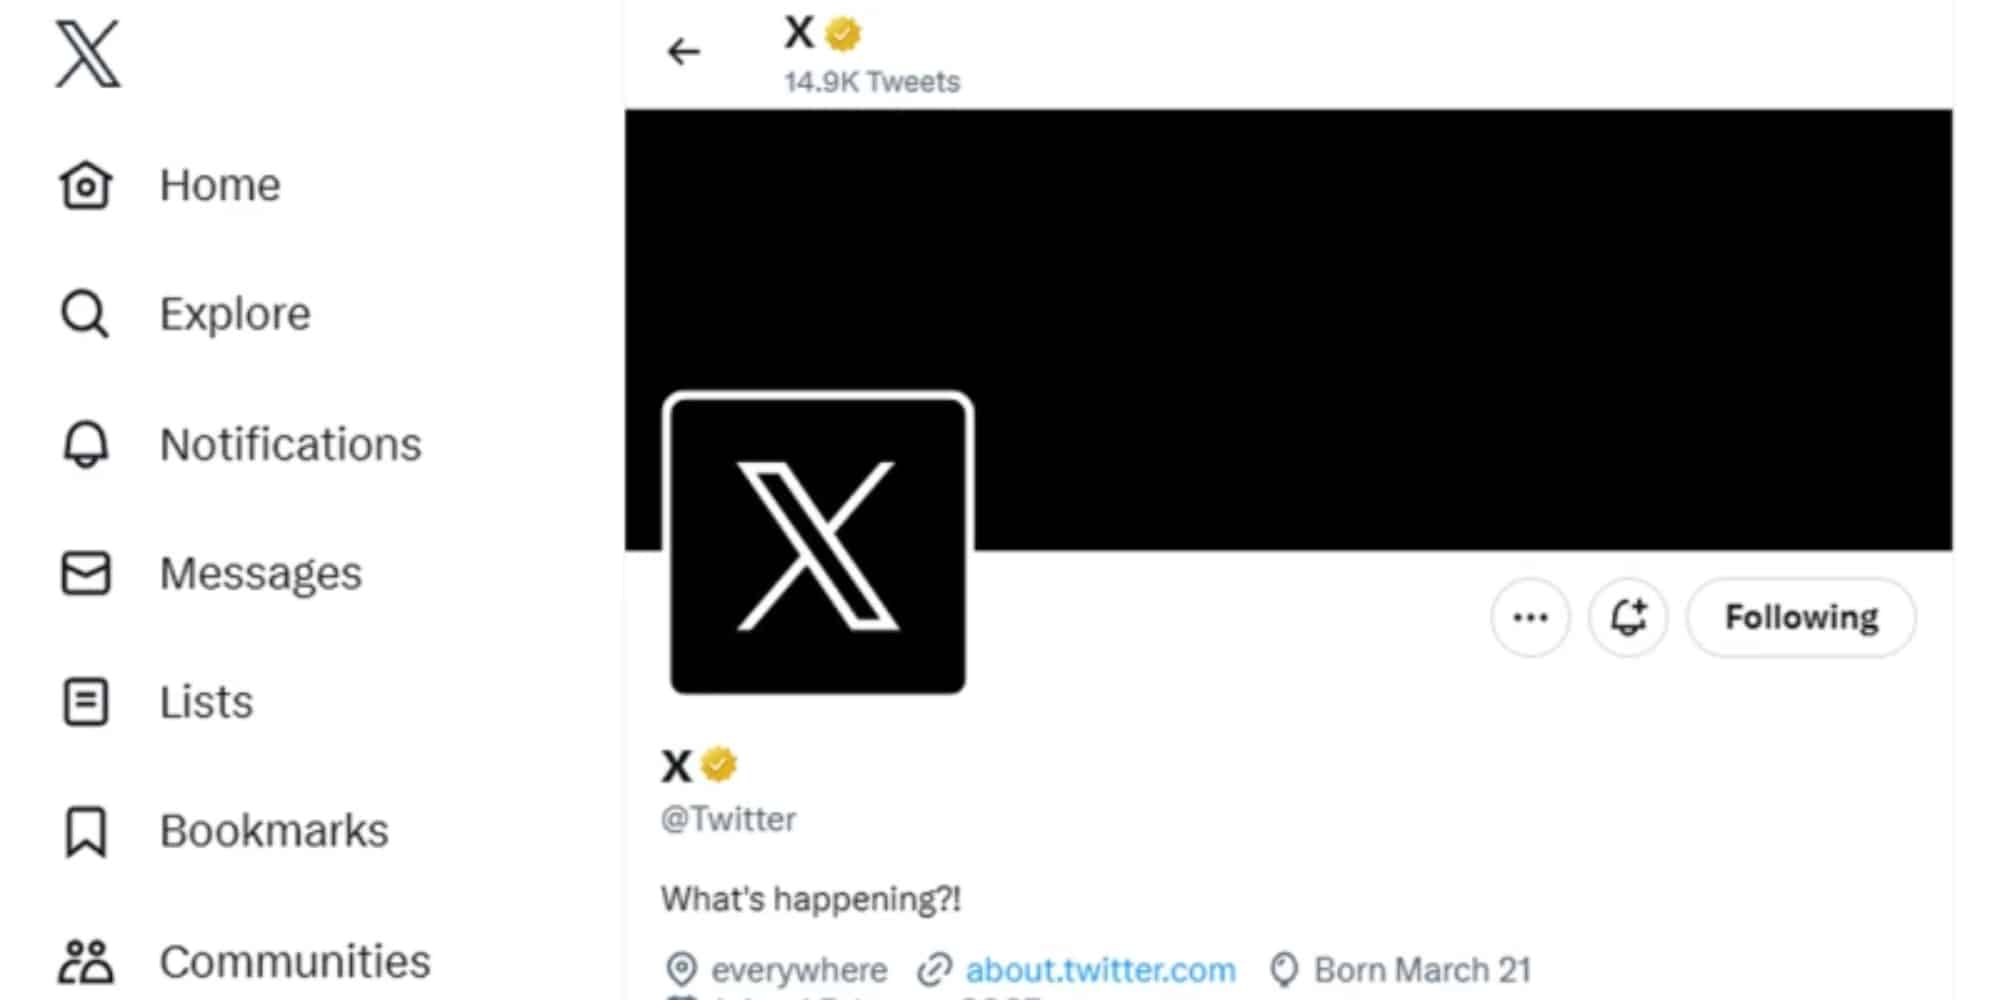 Τέλος εποχής: Το Twitter άλλαξε σε X